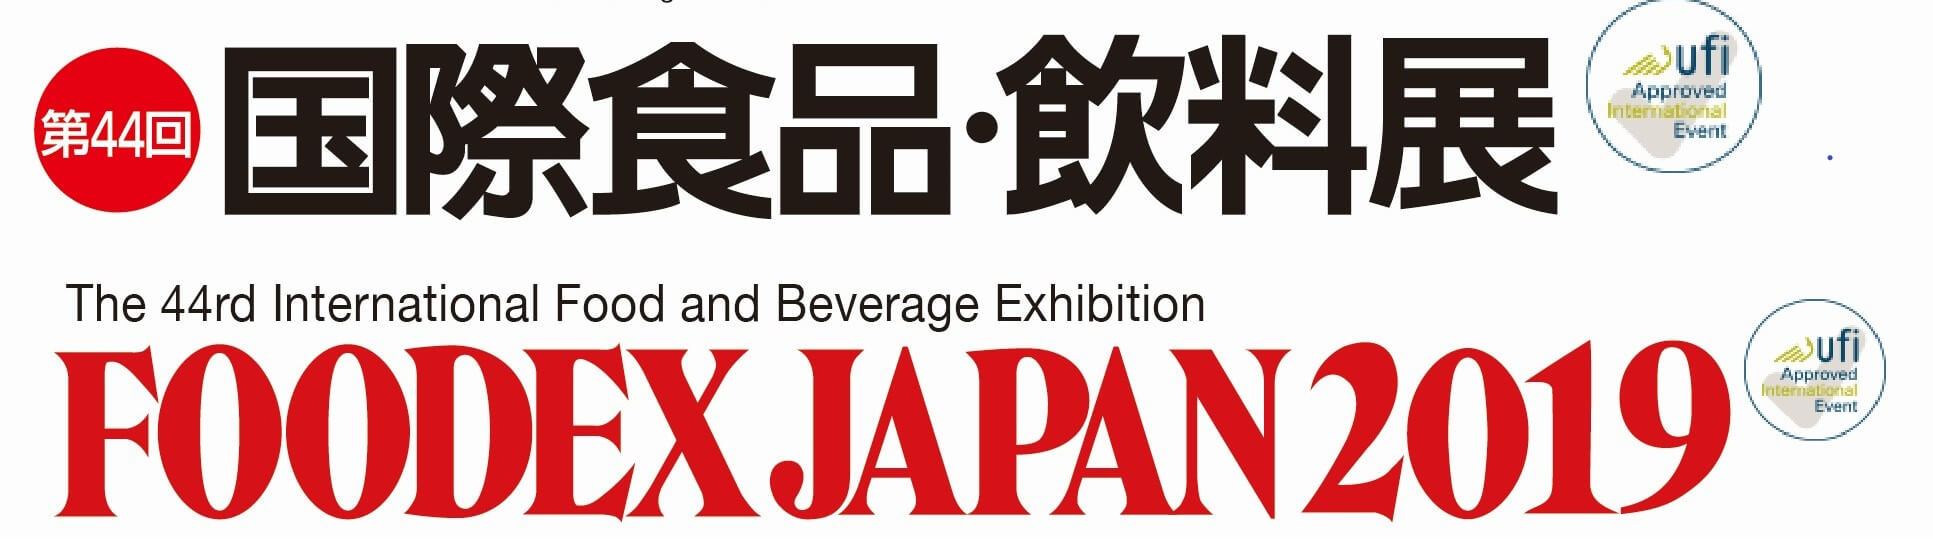 FOODEX JPAN2019「第44回国際食品・飲料展」